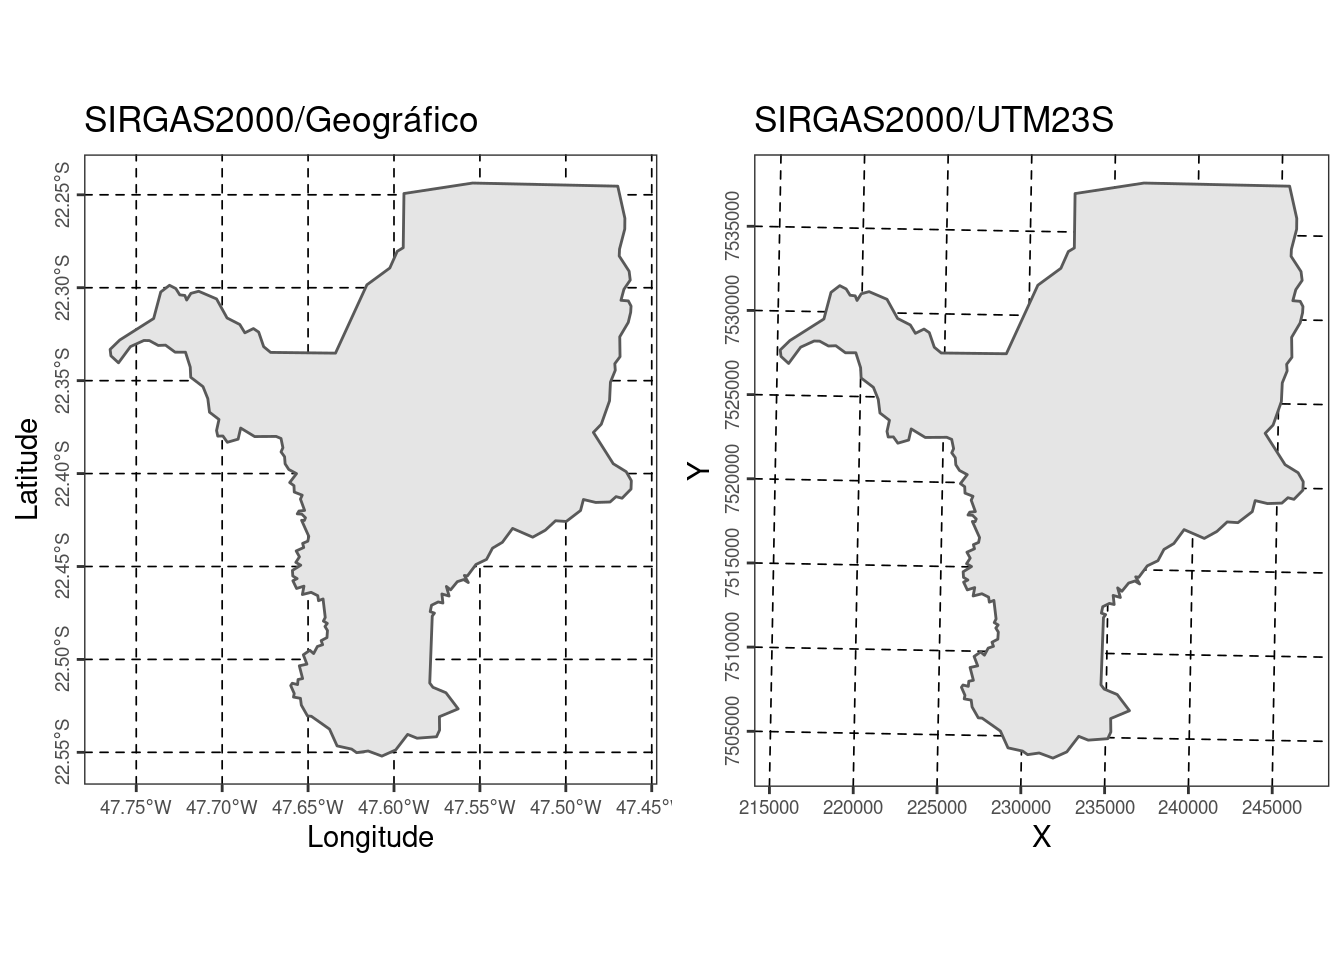 Limites do município de Rio Claro/SP com CRS SIRGAS2000/geográfico e com CRS SIRGAS2000/UTM23S.